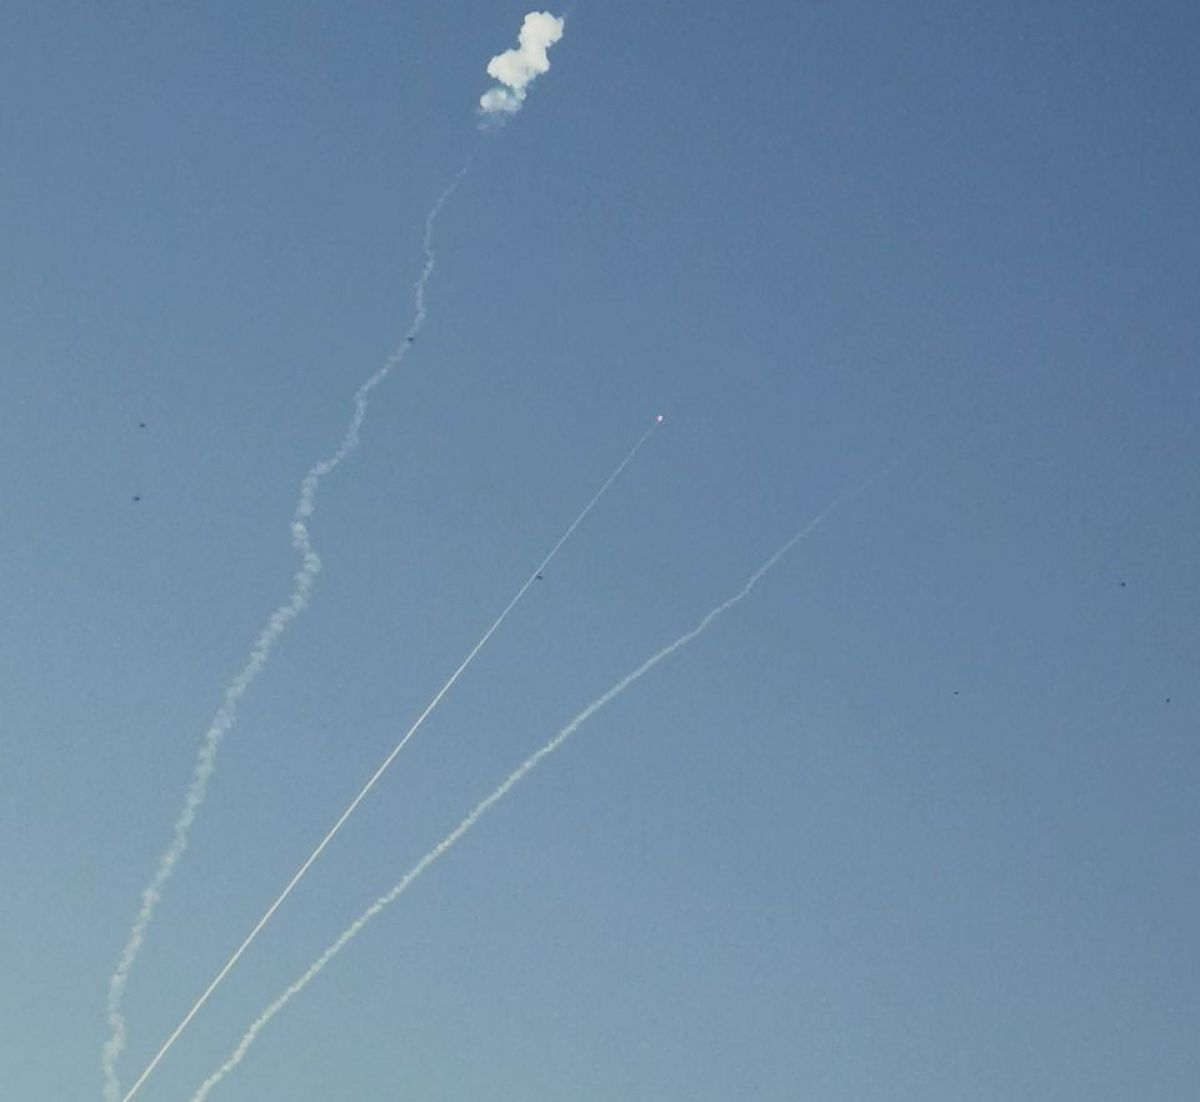 Массированный ракетный удар был осуществлен из беларуси, - Беларускі Гаюн - фото